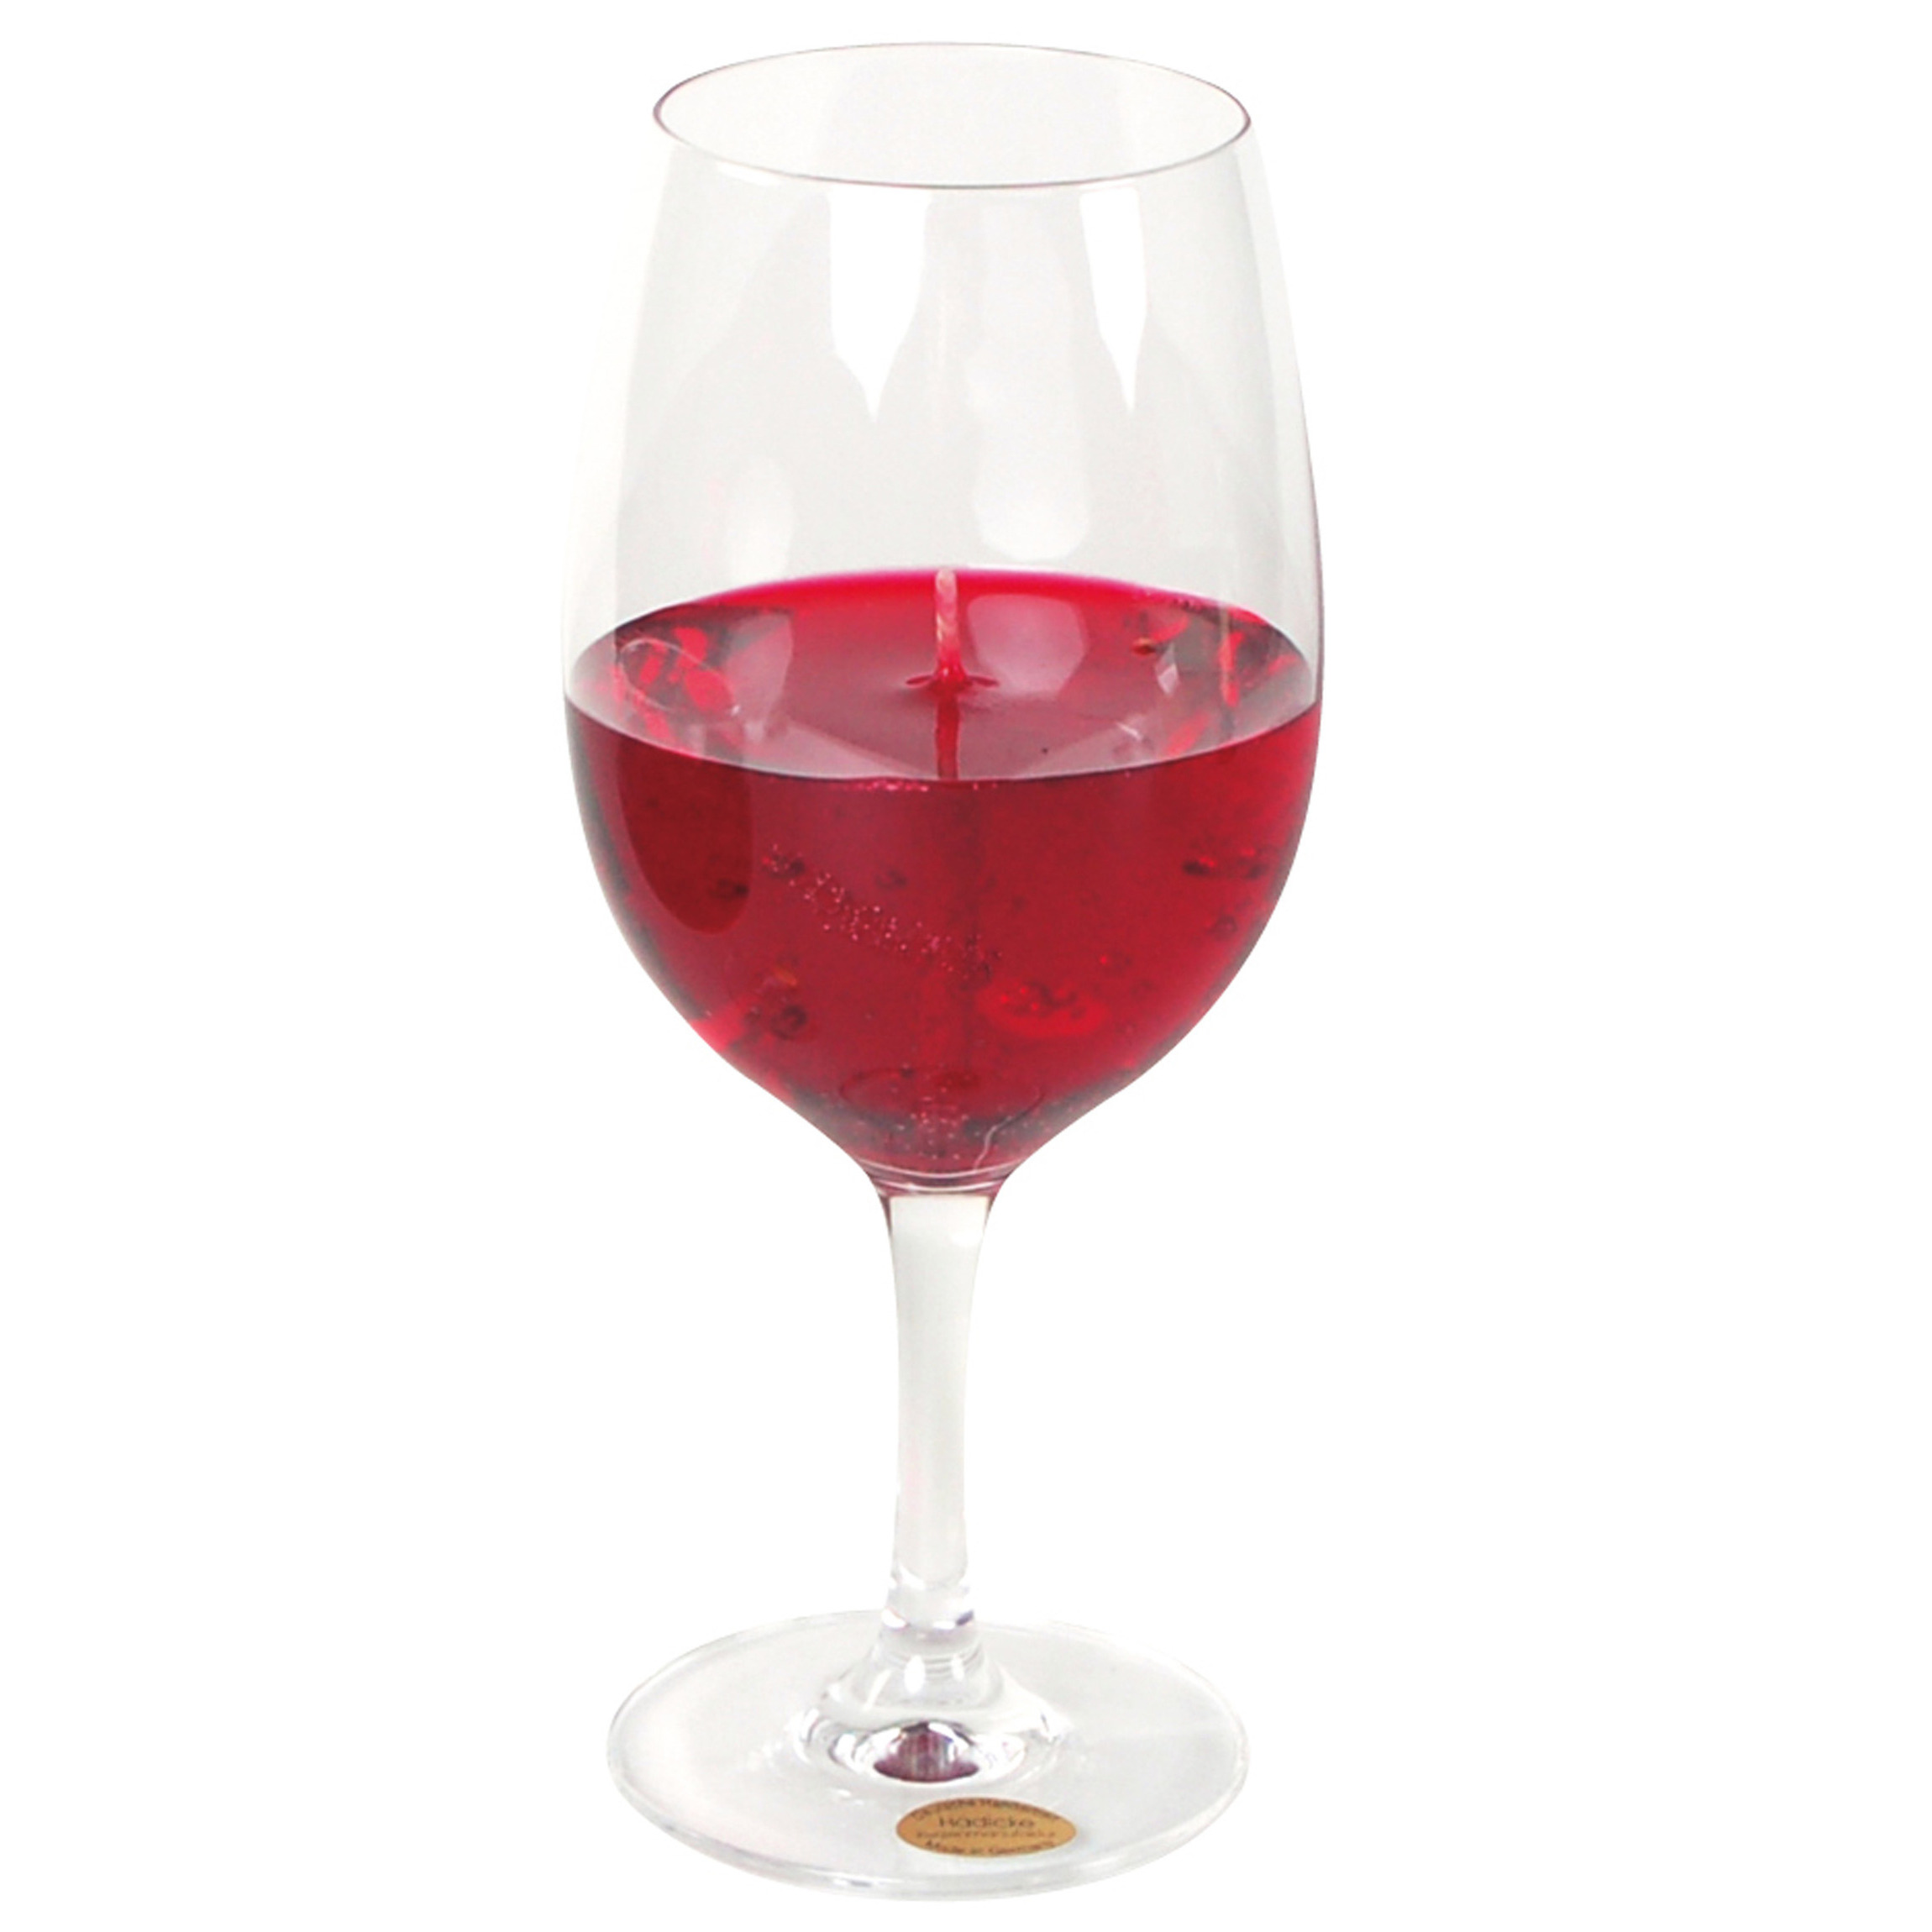 Wijnglas gadget/kado Wijnkaars - geurkaars - H21 cm - rode wijn - Moederdag/verjaardag